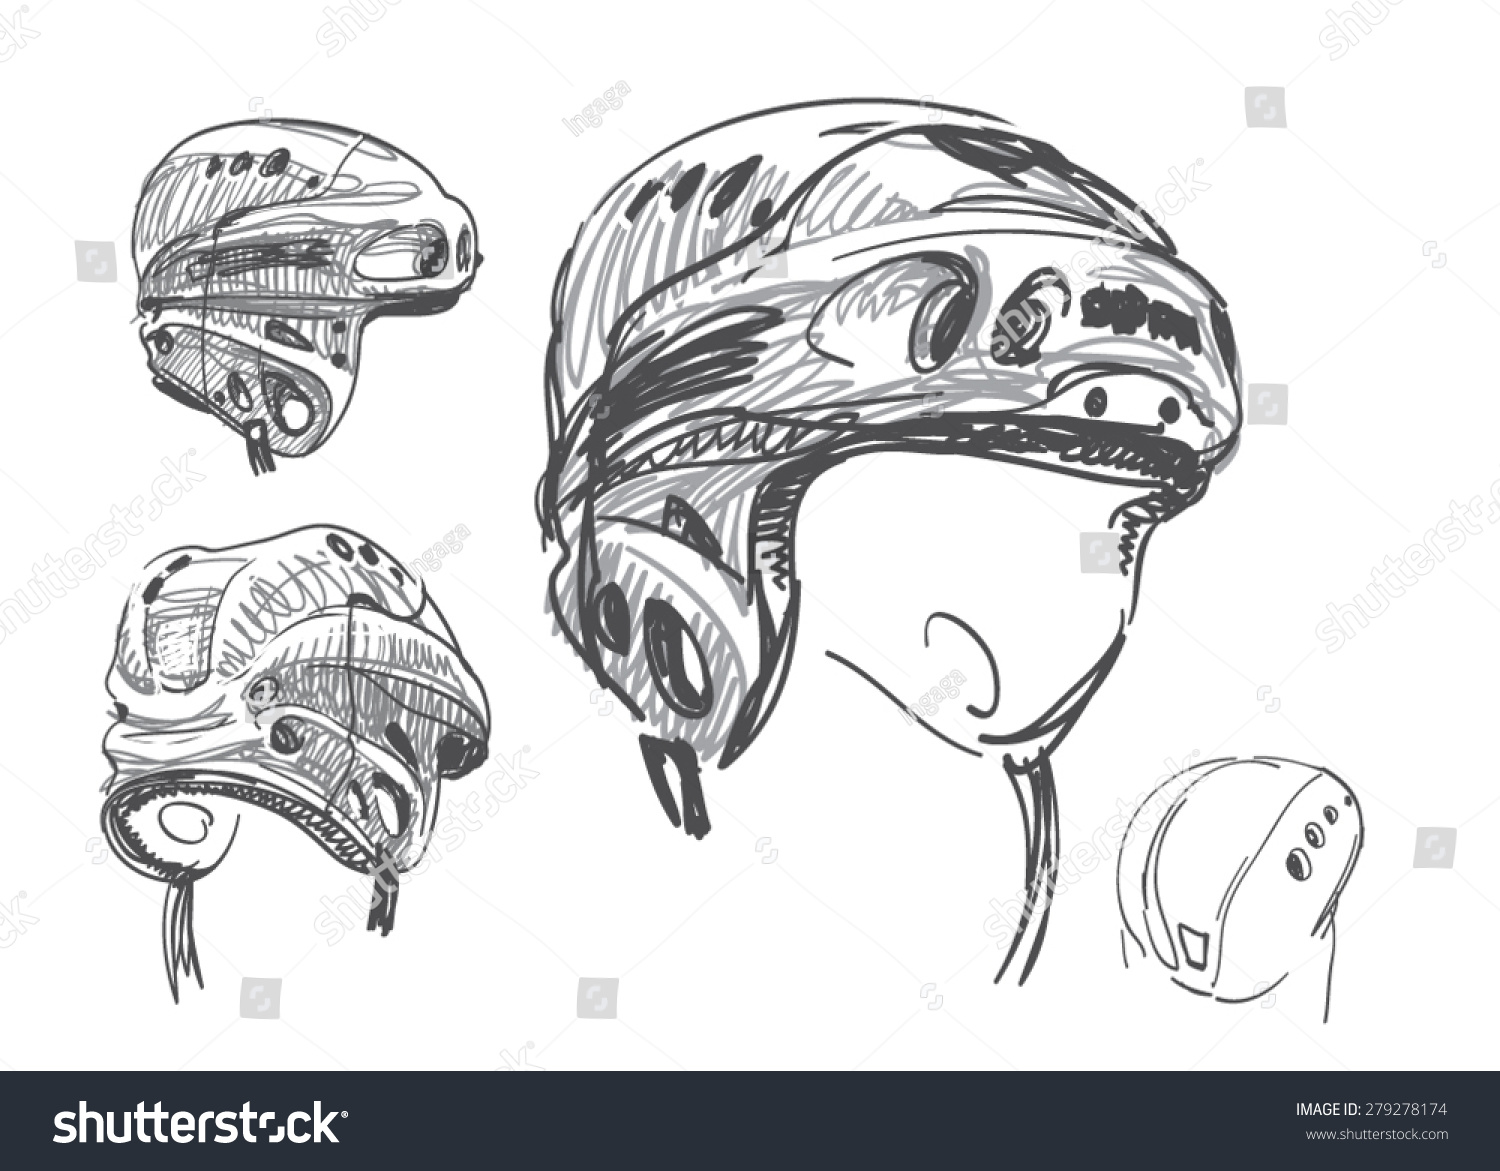 Hockey Helmet Sketch Vector: стоковая векторная графика (без лицензионных п...